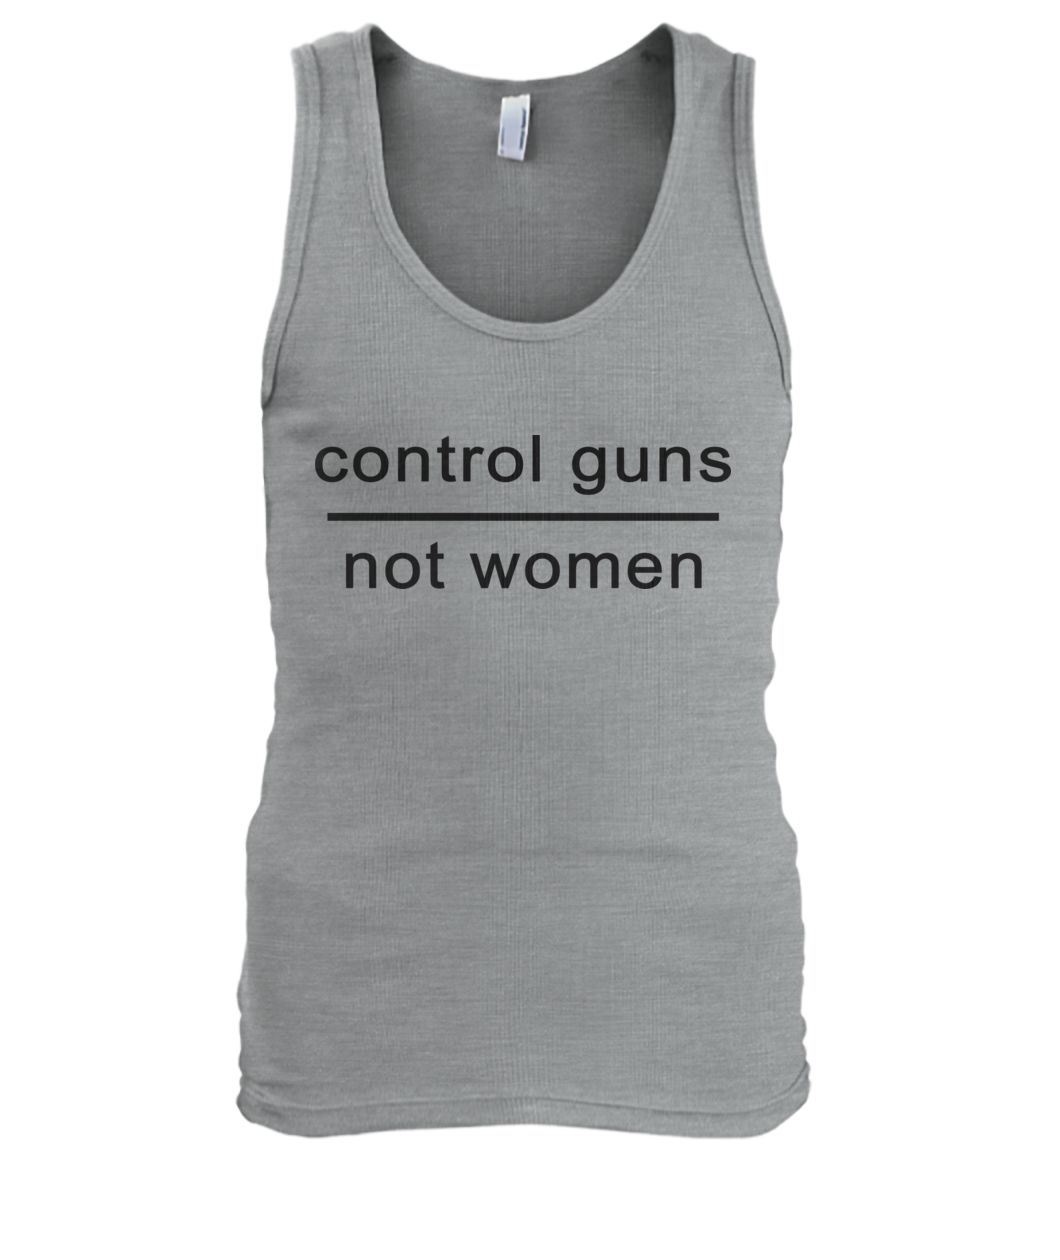 Control guns not women men's tank top